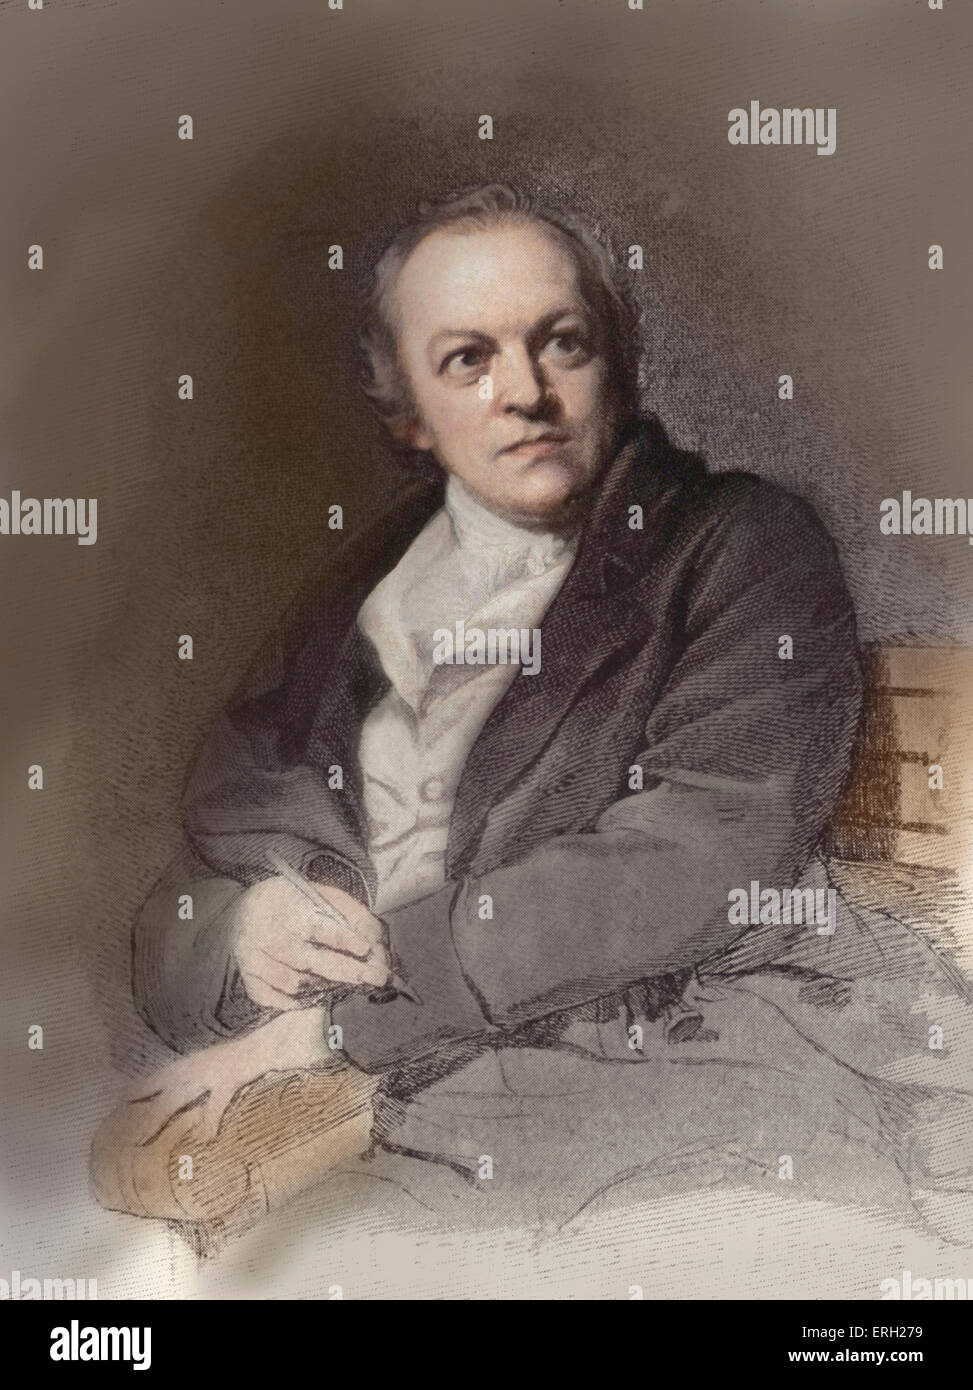 William Blake, poète britannique, peintre et graveur, après le portrait par T. Phillips. 28 novembre 1757 - 12 août 1827. Banque D'Images